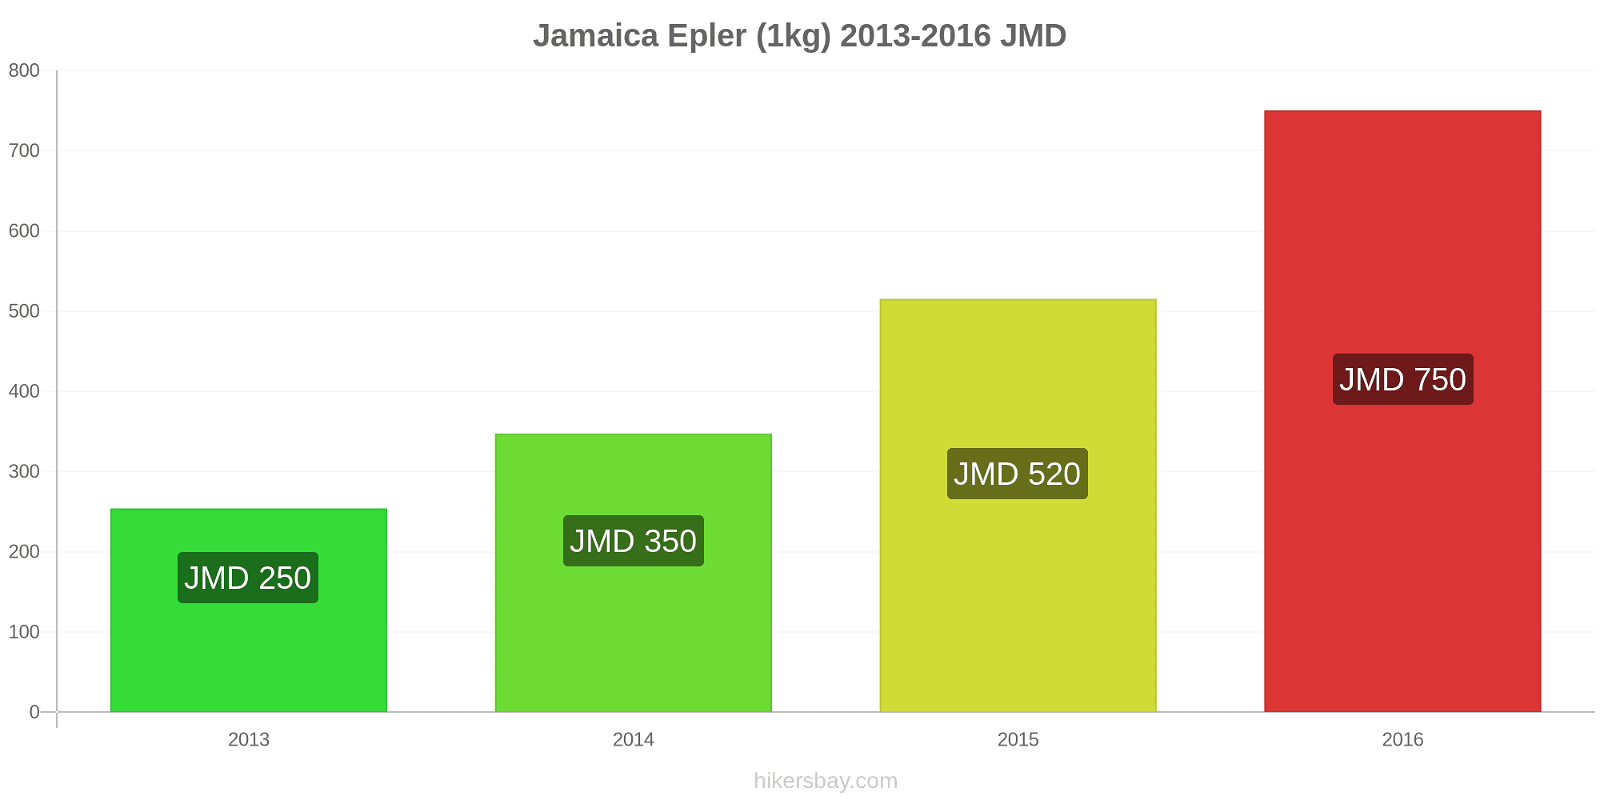 Jamaica prisendringer Epler (1kg) hikersbay.com